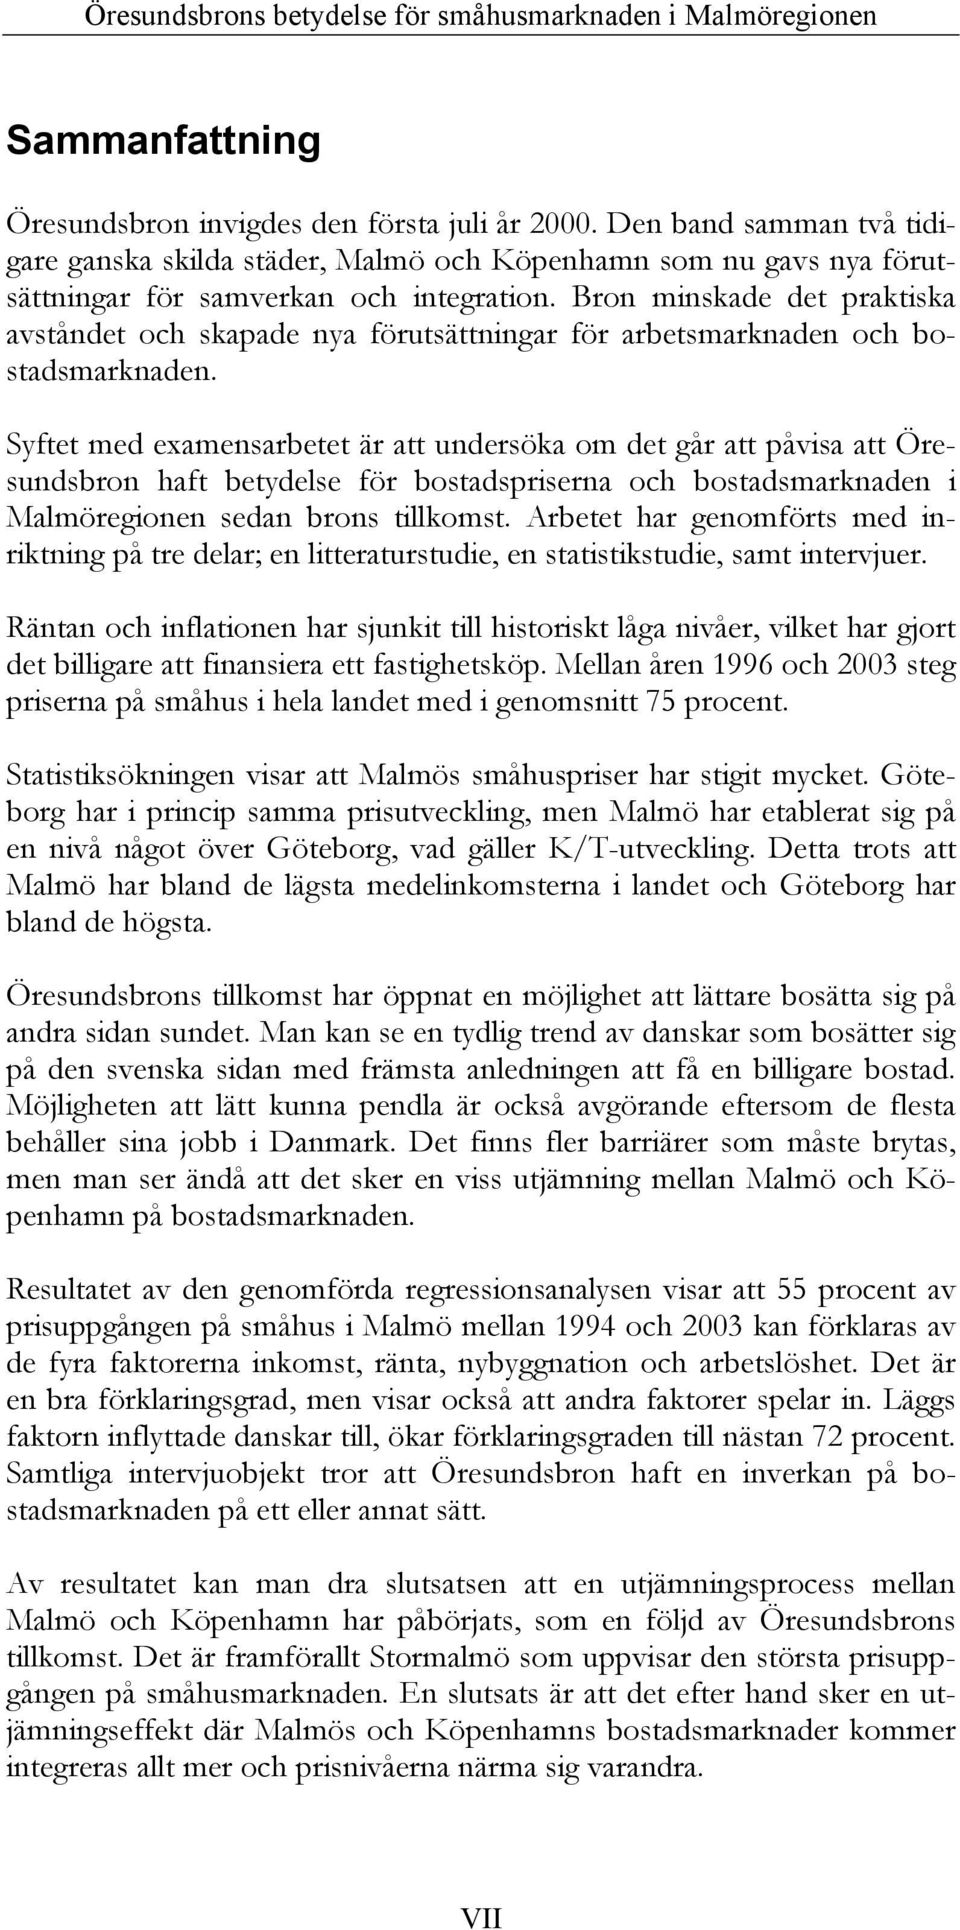 Syftet med examensarbetet är att undersöka om det går att påvisa att Öresundsbron haft betydelse för bostadspriserna och bostadsmarknaden i Malmöregionen sedan brons tillkomst.